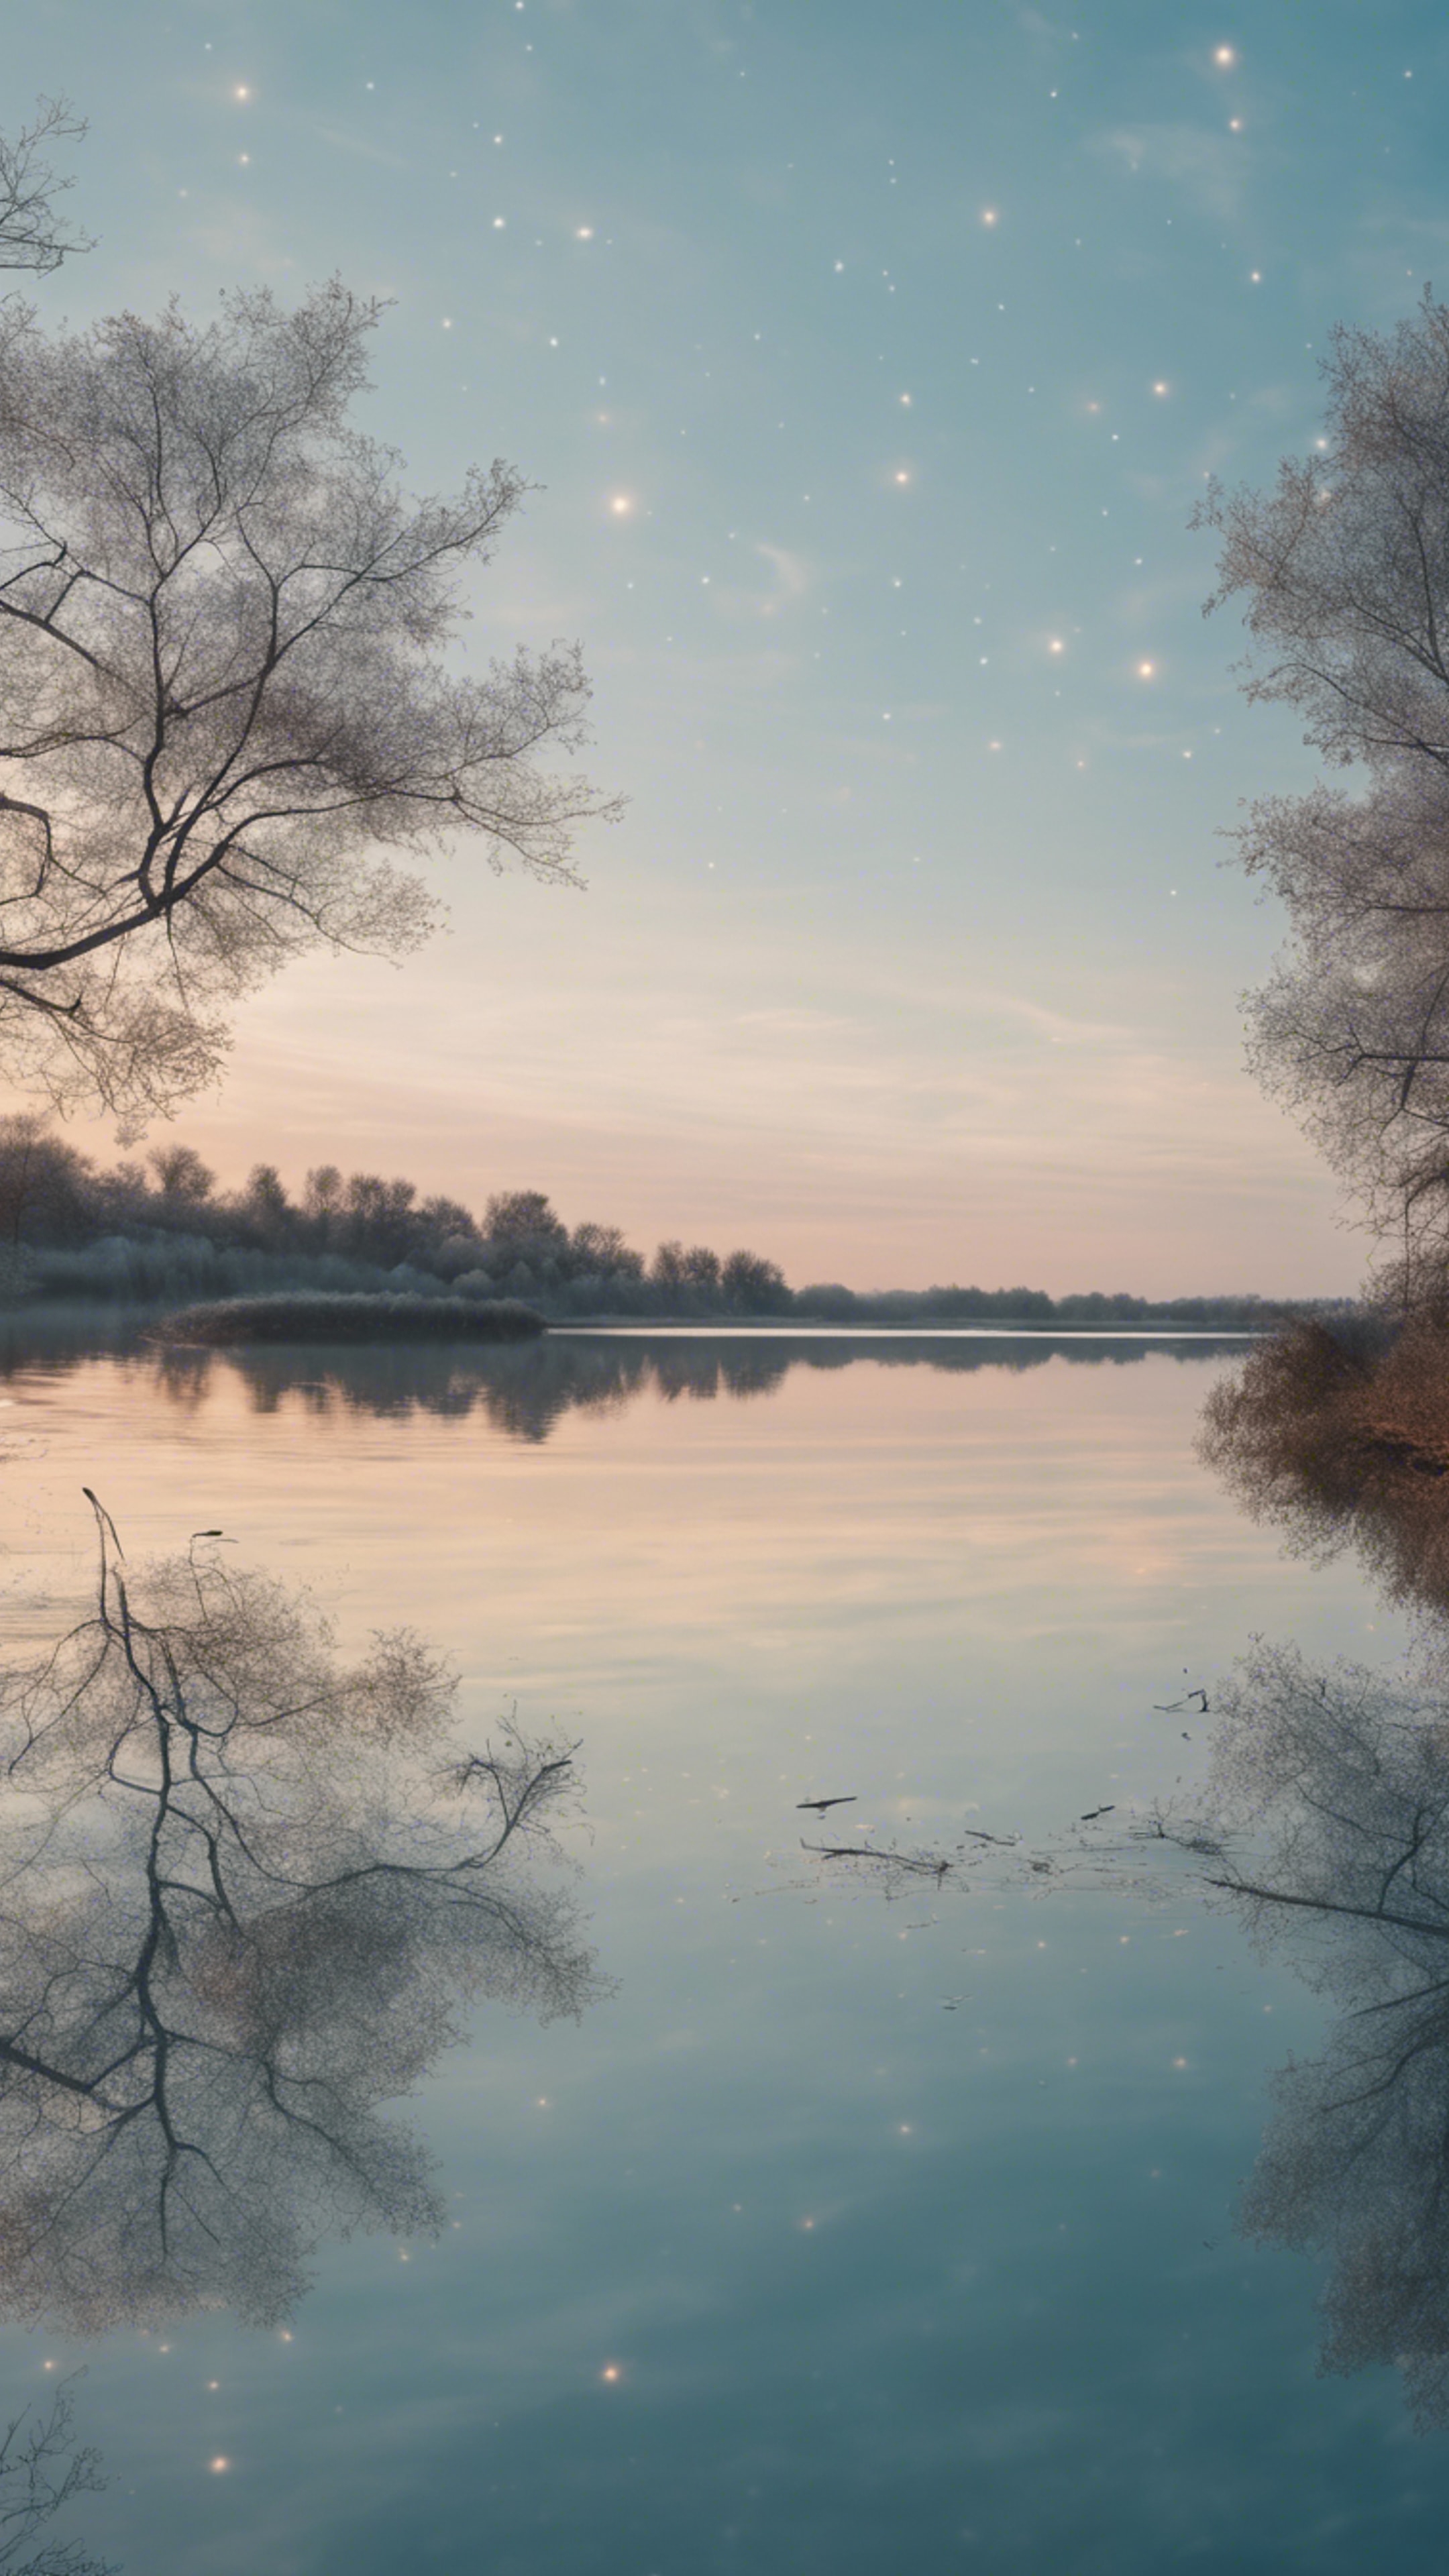 A pastel blue sky at dawn reflecting on a tranquil lake. ផ្ទាំង​រូបភាព[f0afb54b812141669b7c]